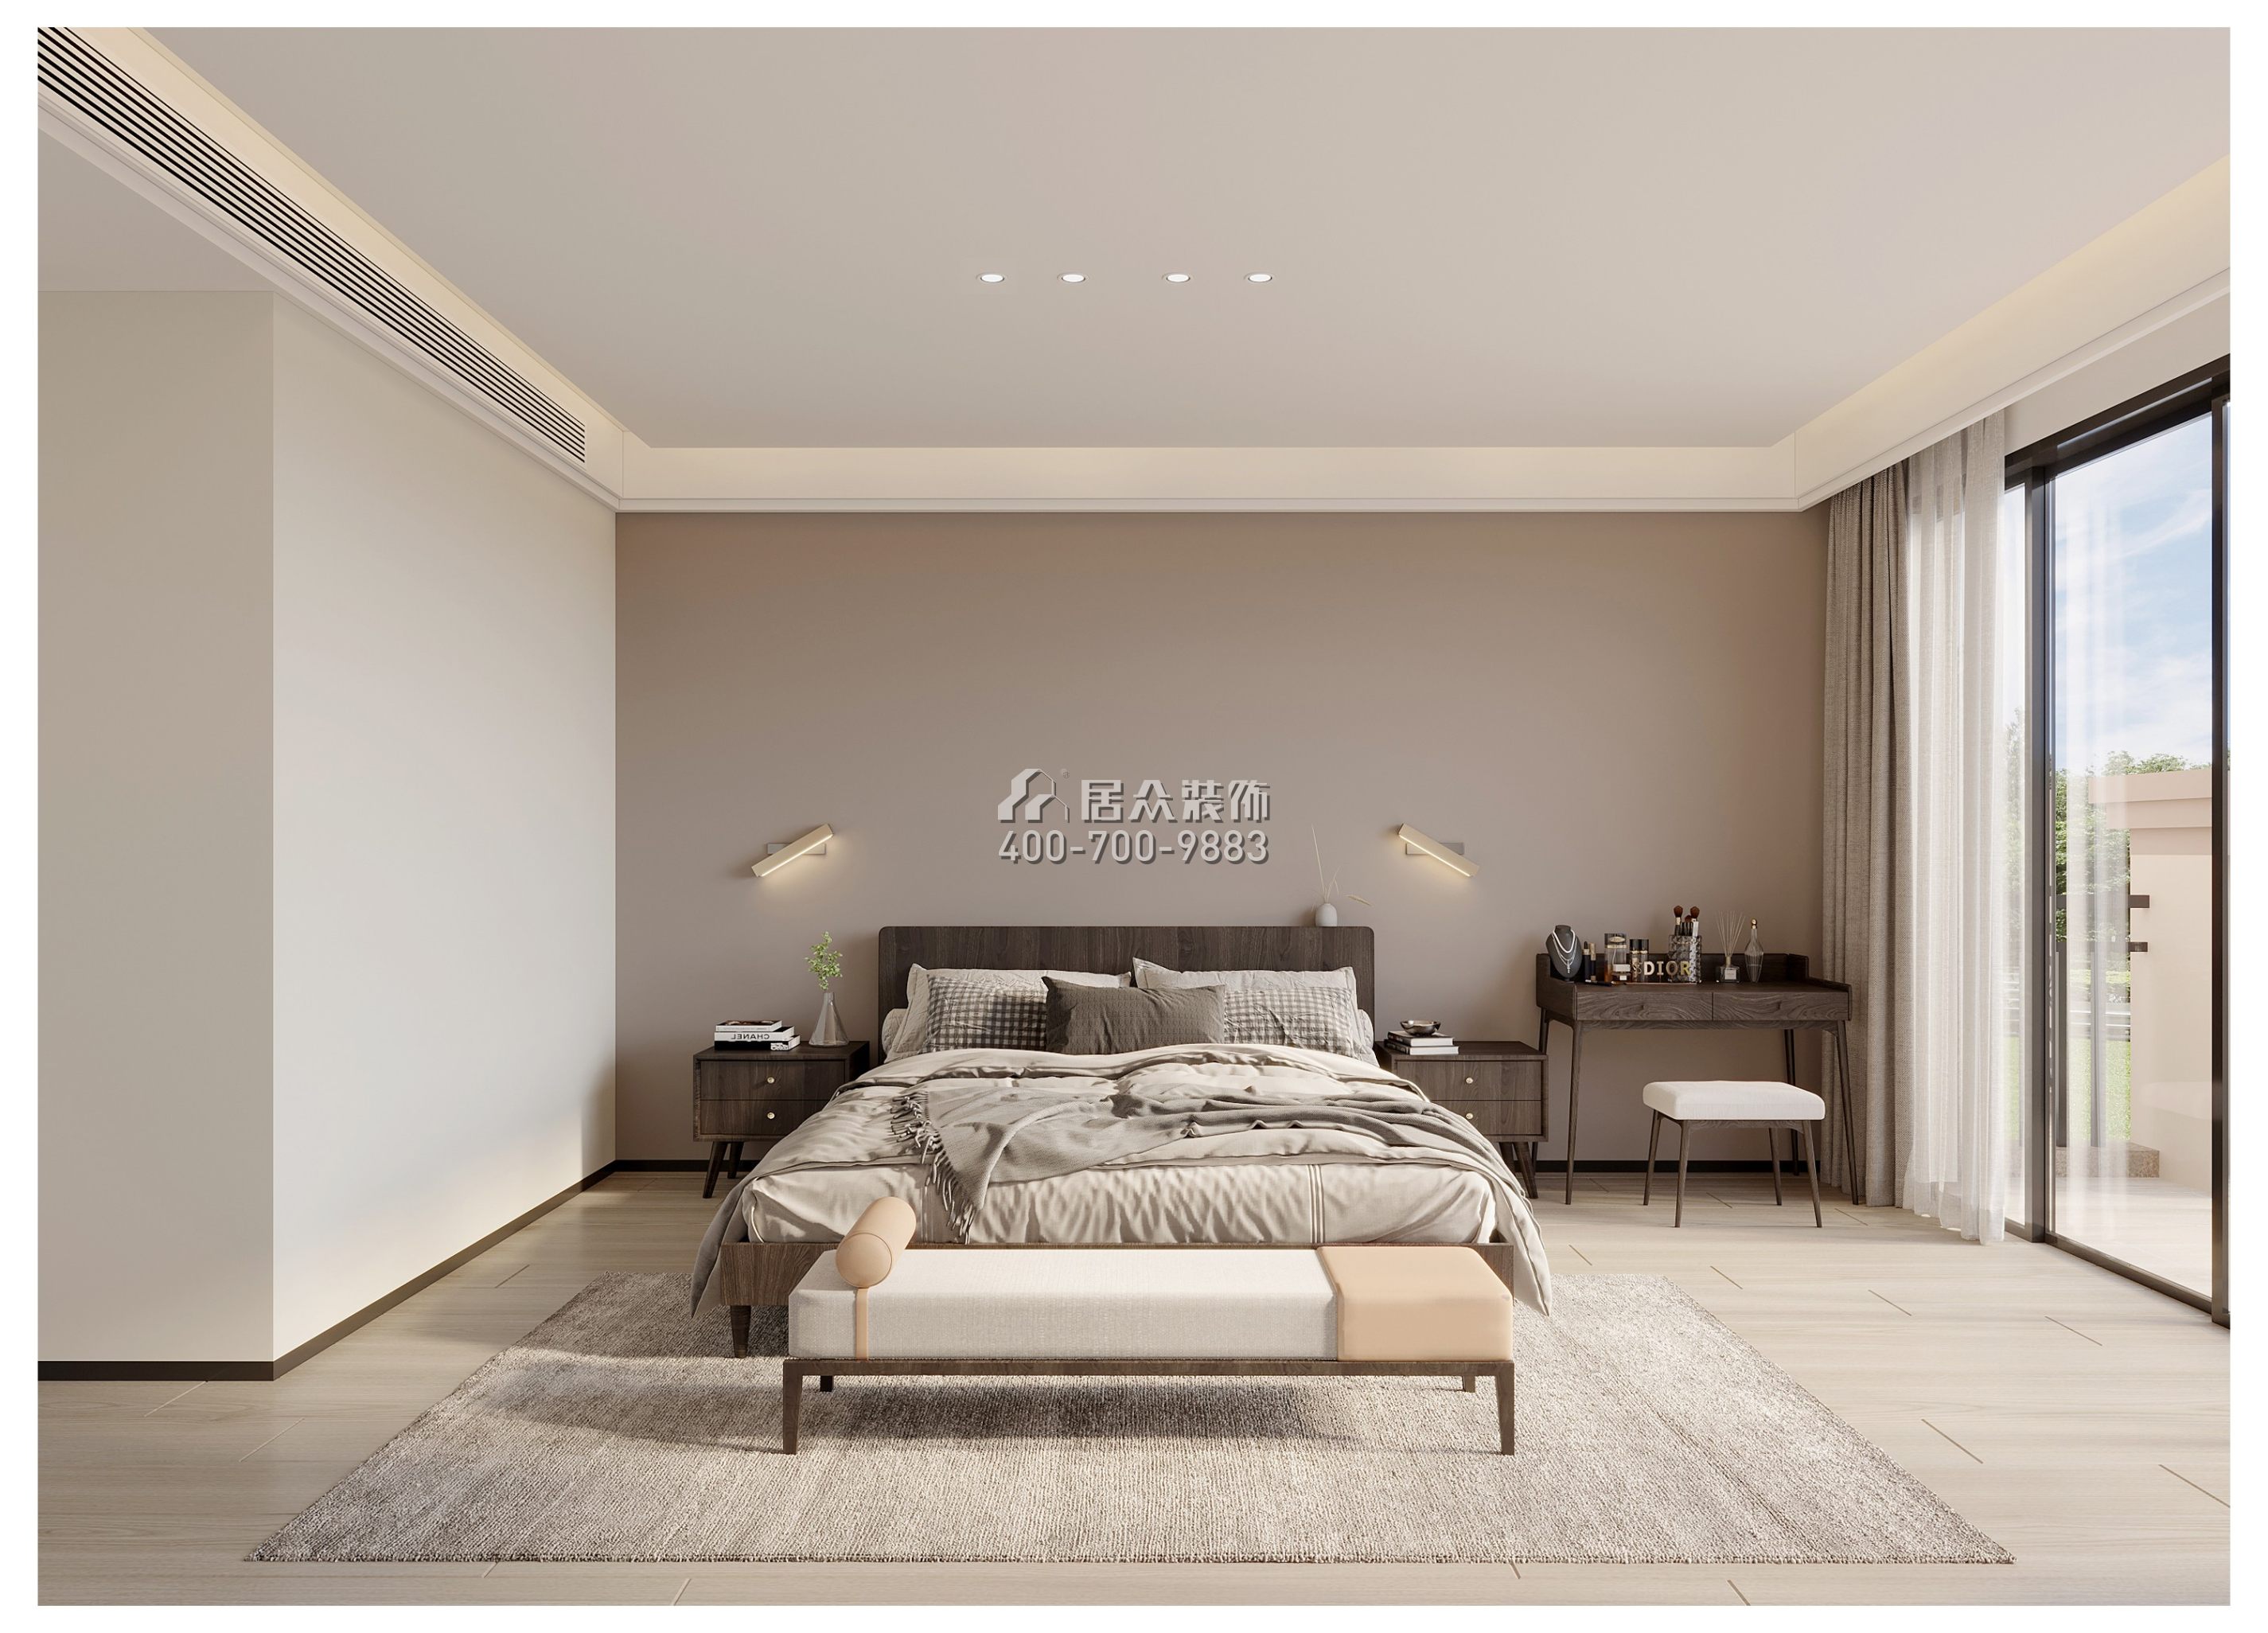 海逸豪庭御峰560平方米现代简约风格别墅户型卧室装修效果图